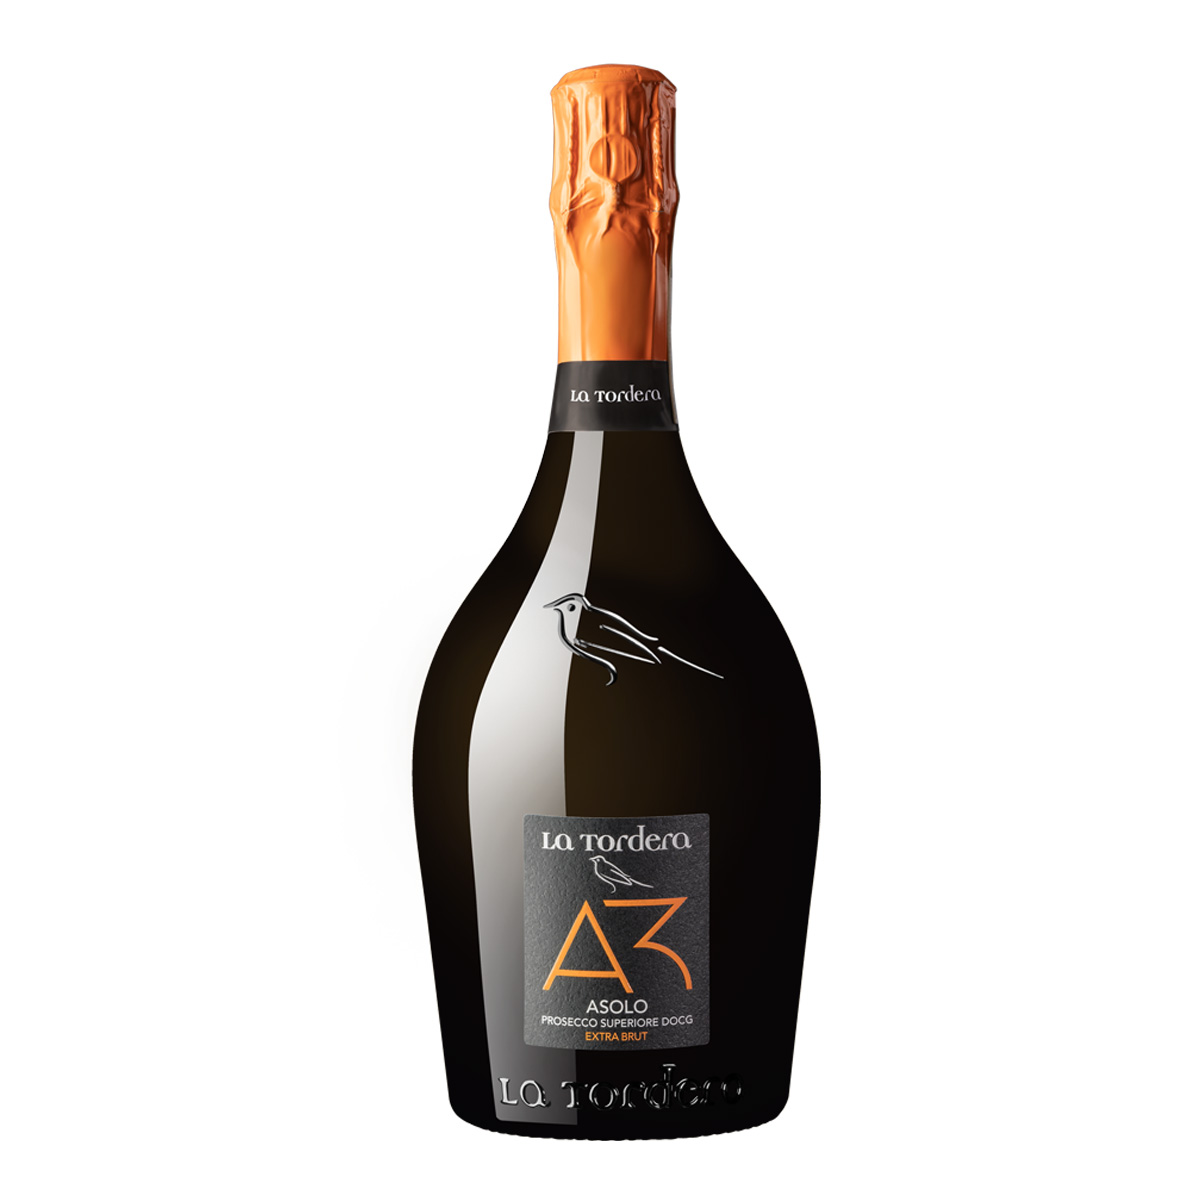 意大利A3 Asolo Prosecco Superiore DOCG Extra Brut 特级干型普罗塞克起泡酒